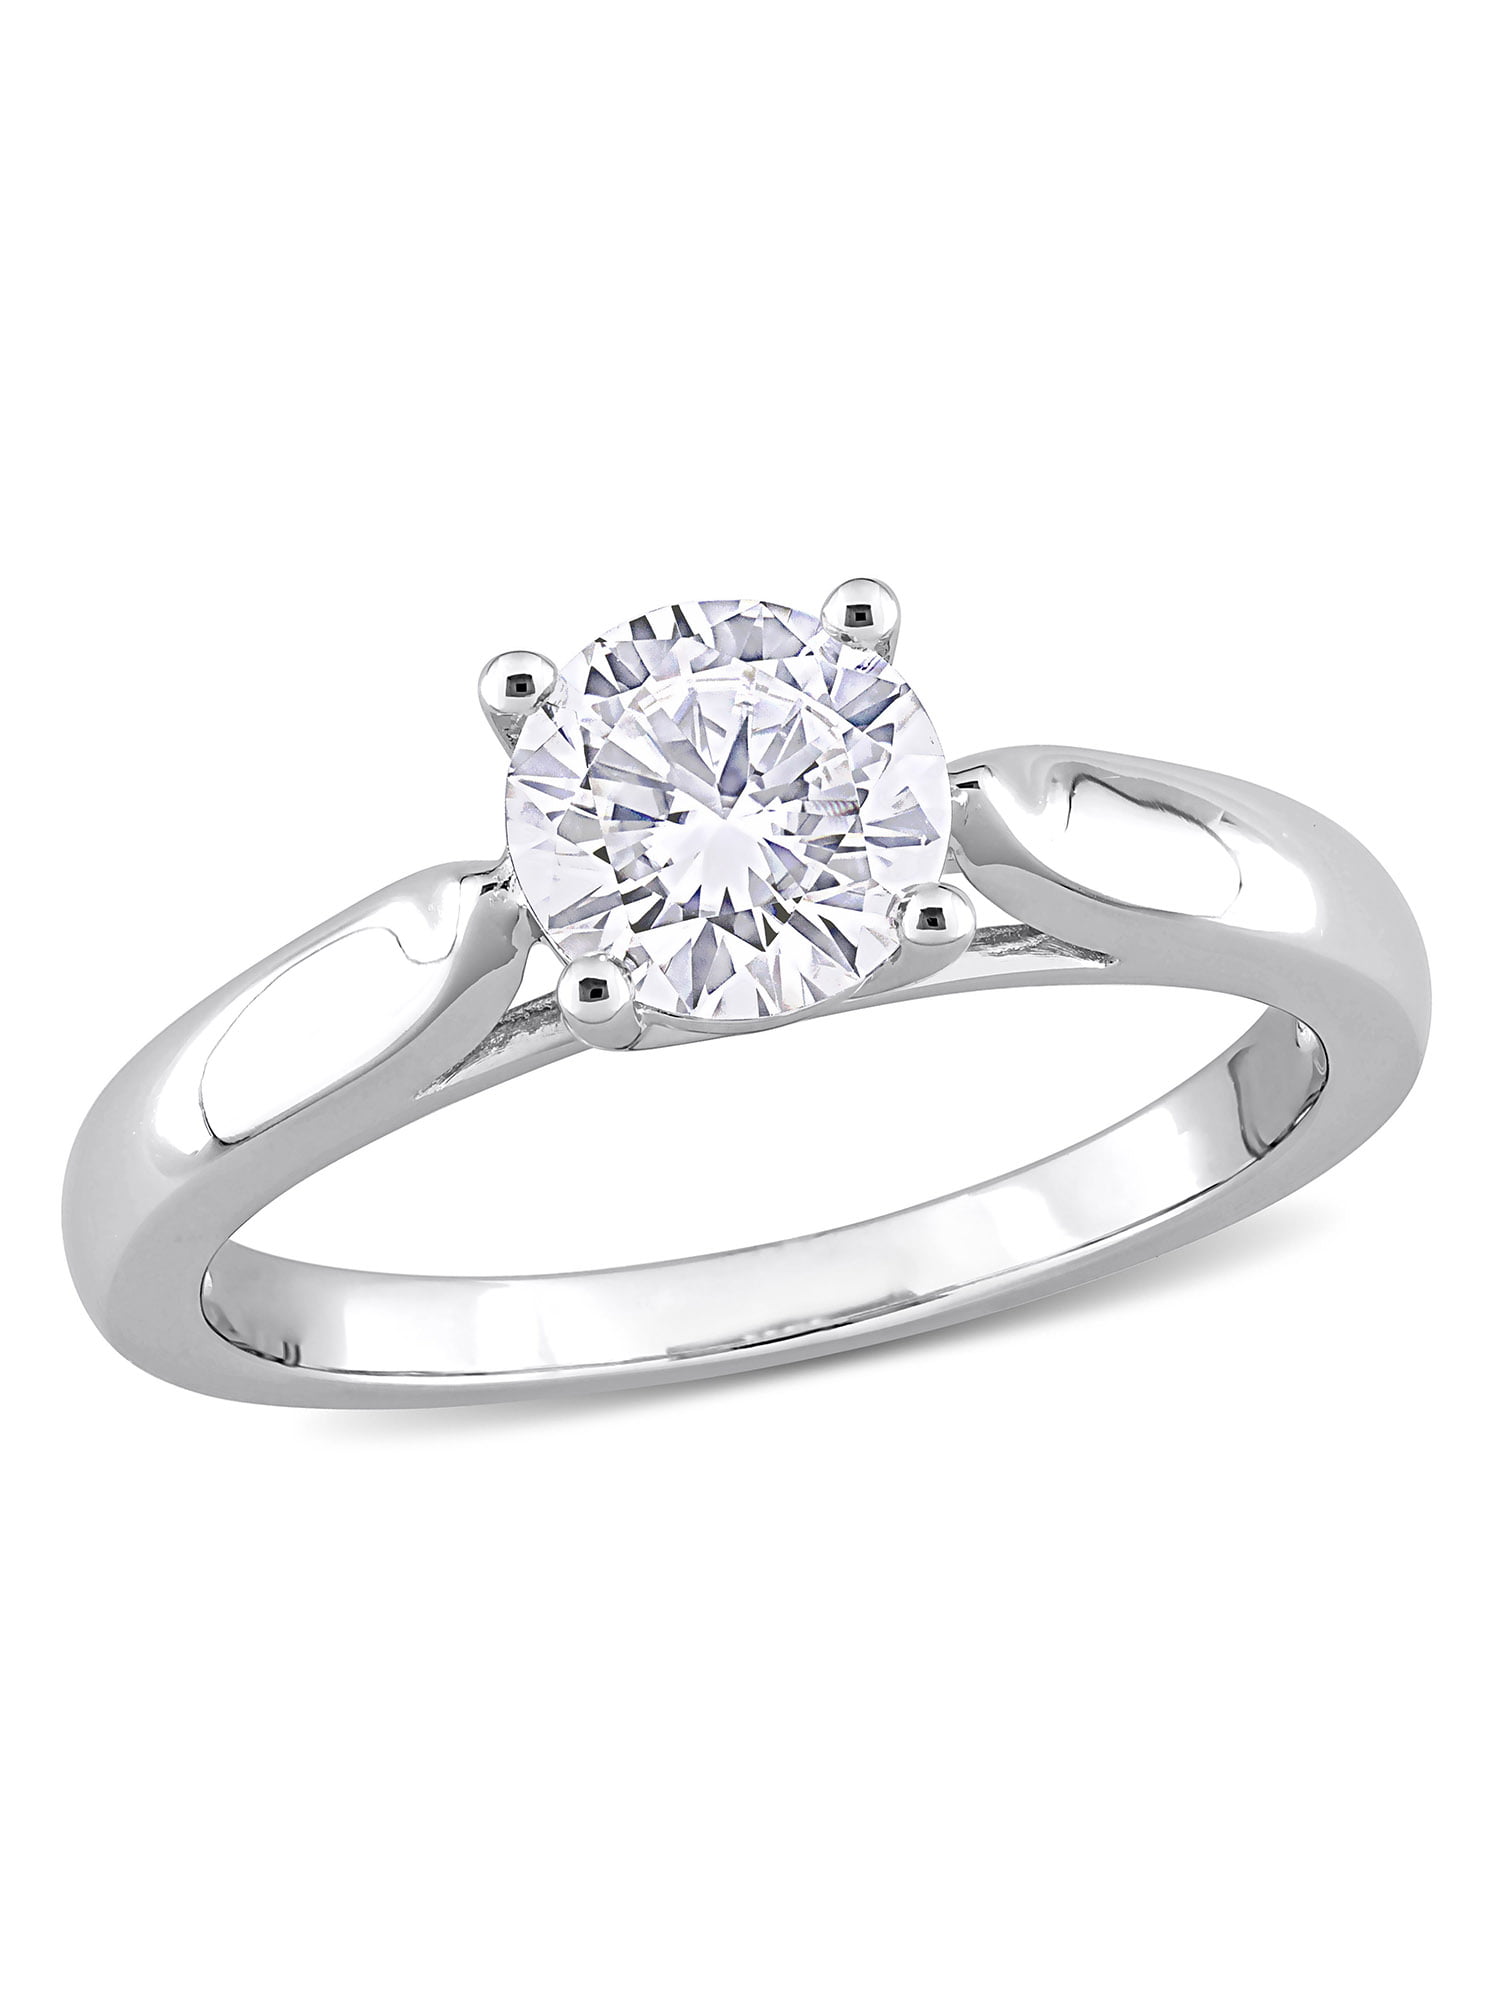 1 Carat Top Grade Moissanite Ring Handmade Wedding Engagement Gift For Her Sterling Silver Rings for Women